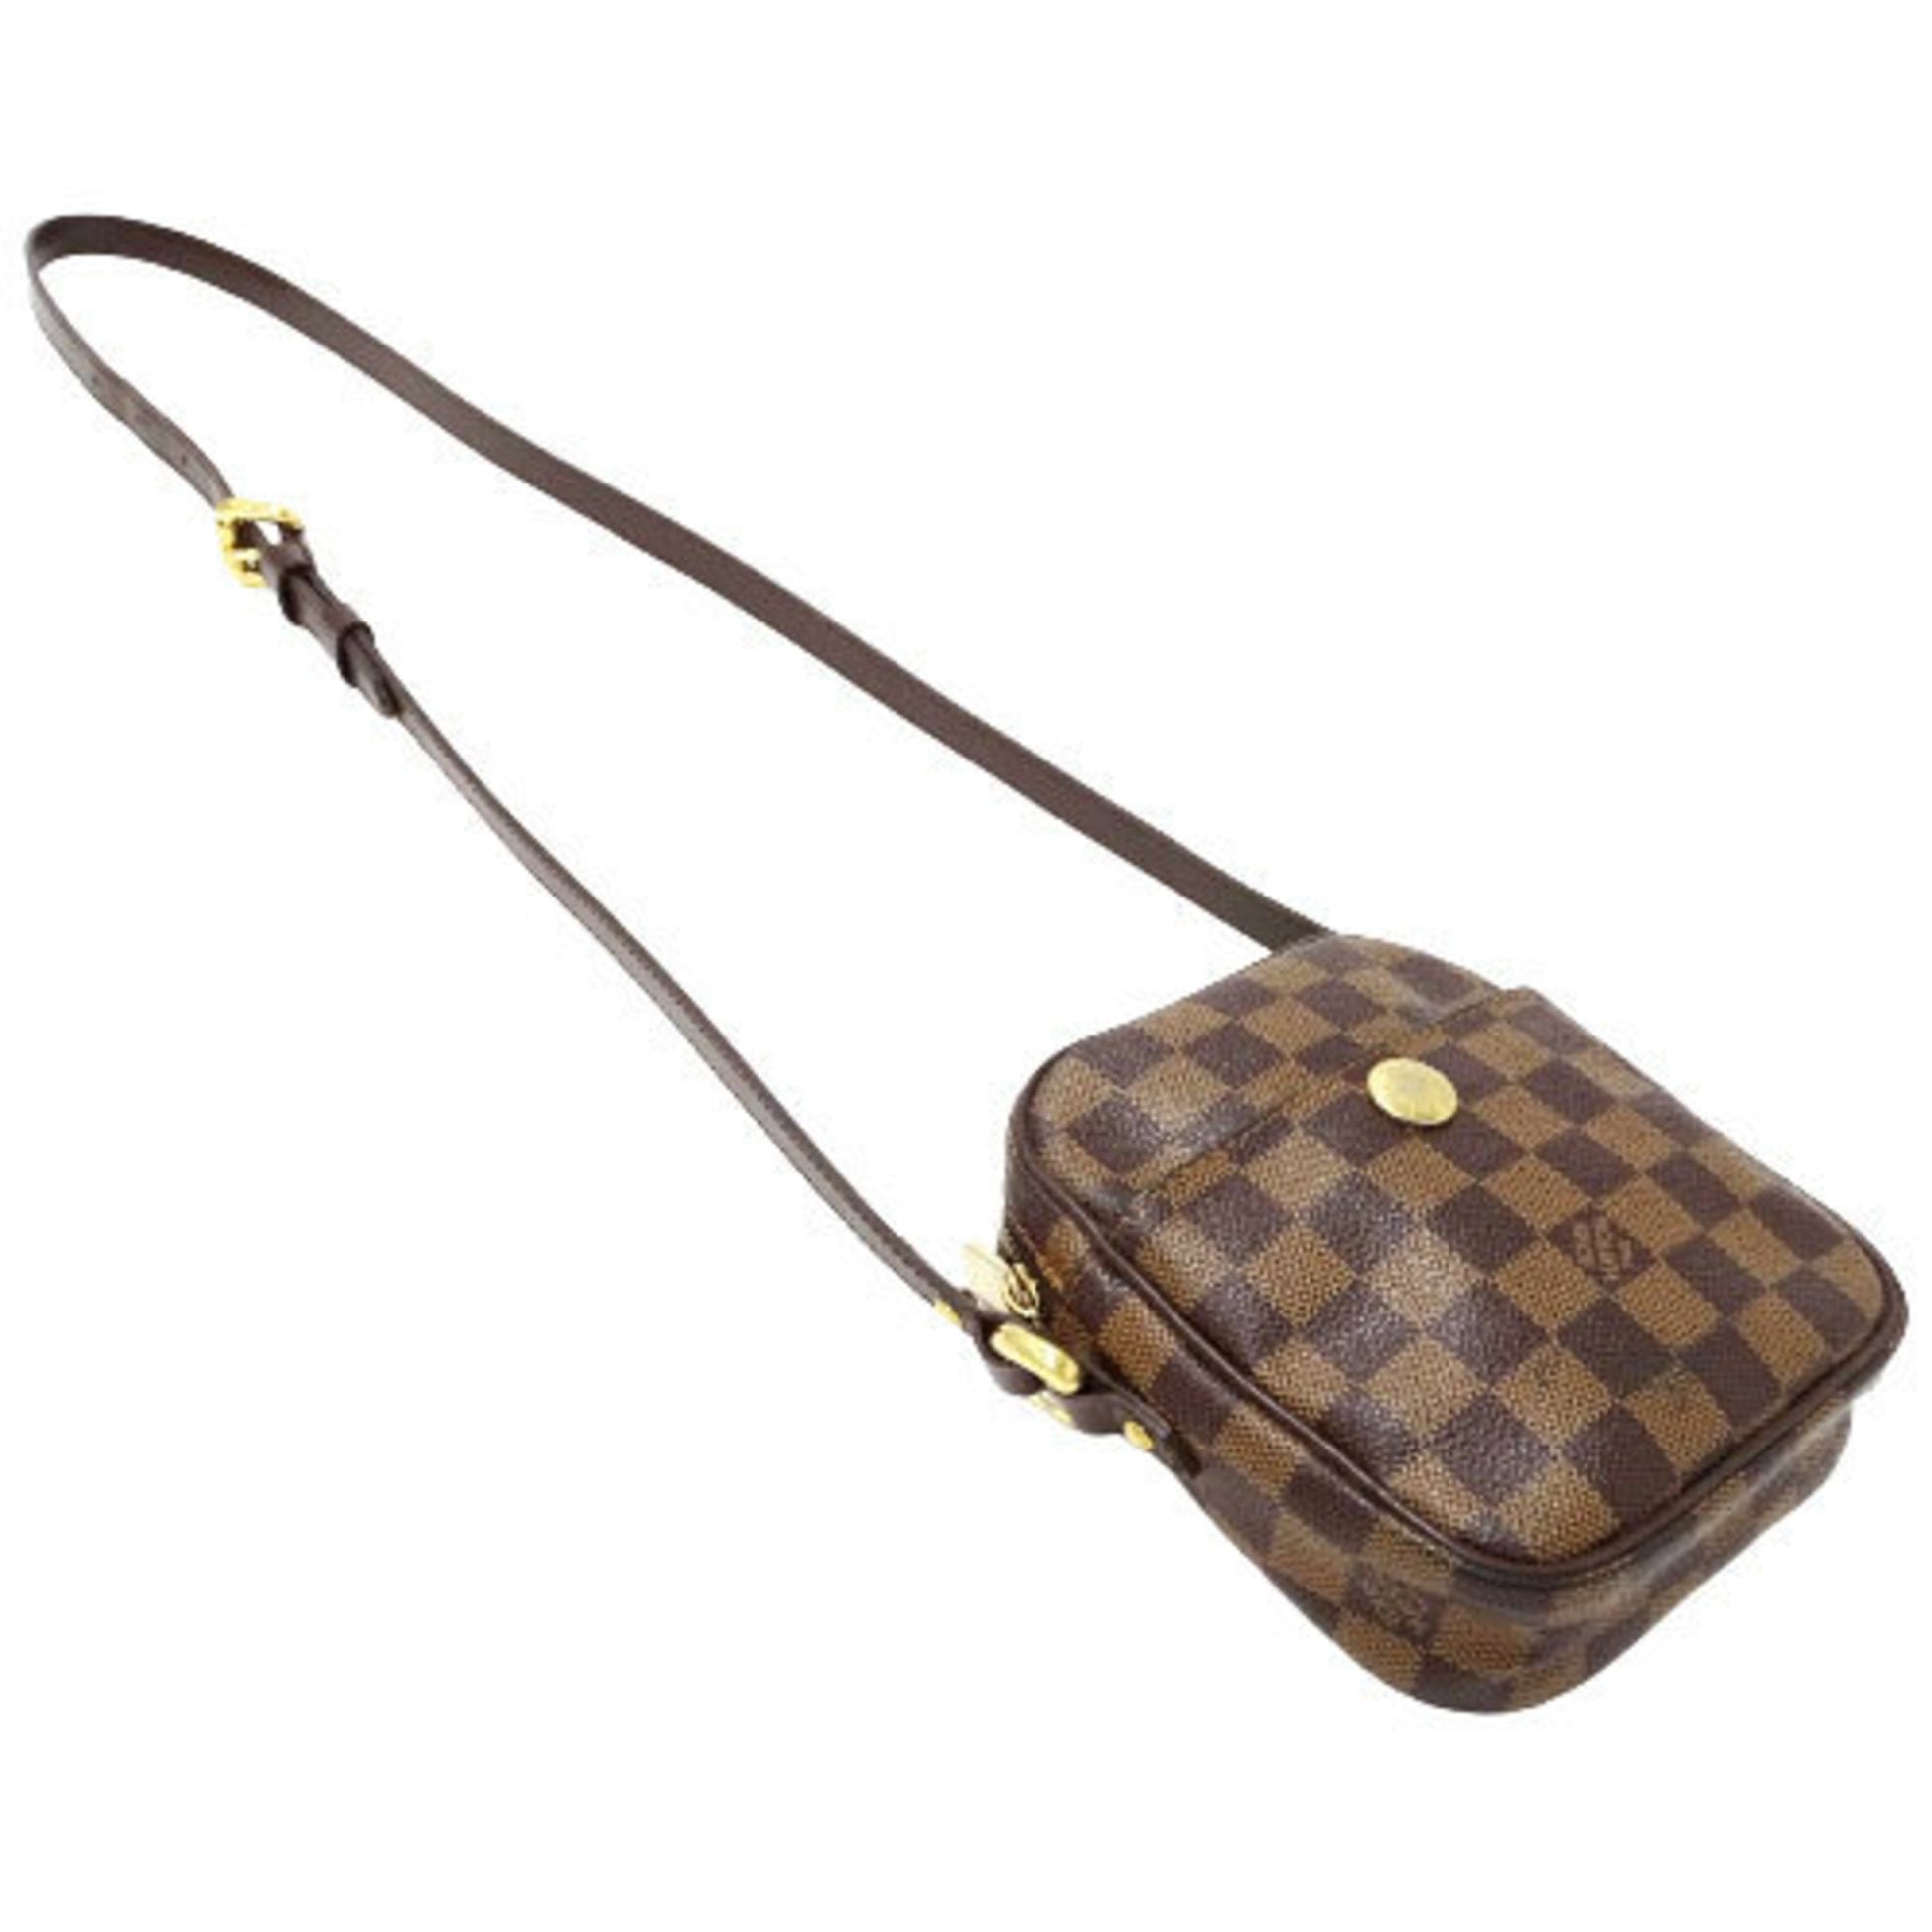 Louis Vuitton Lift Women's Shoulder Bag N60009 Damier Canvas Ebene (Brown)